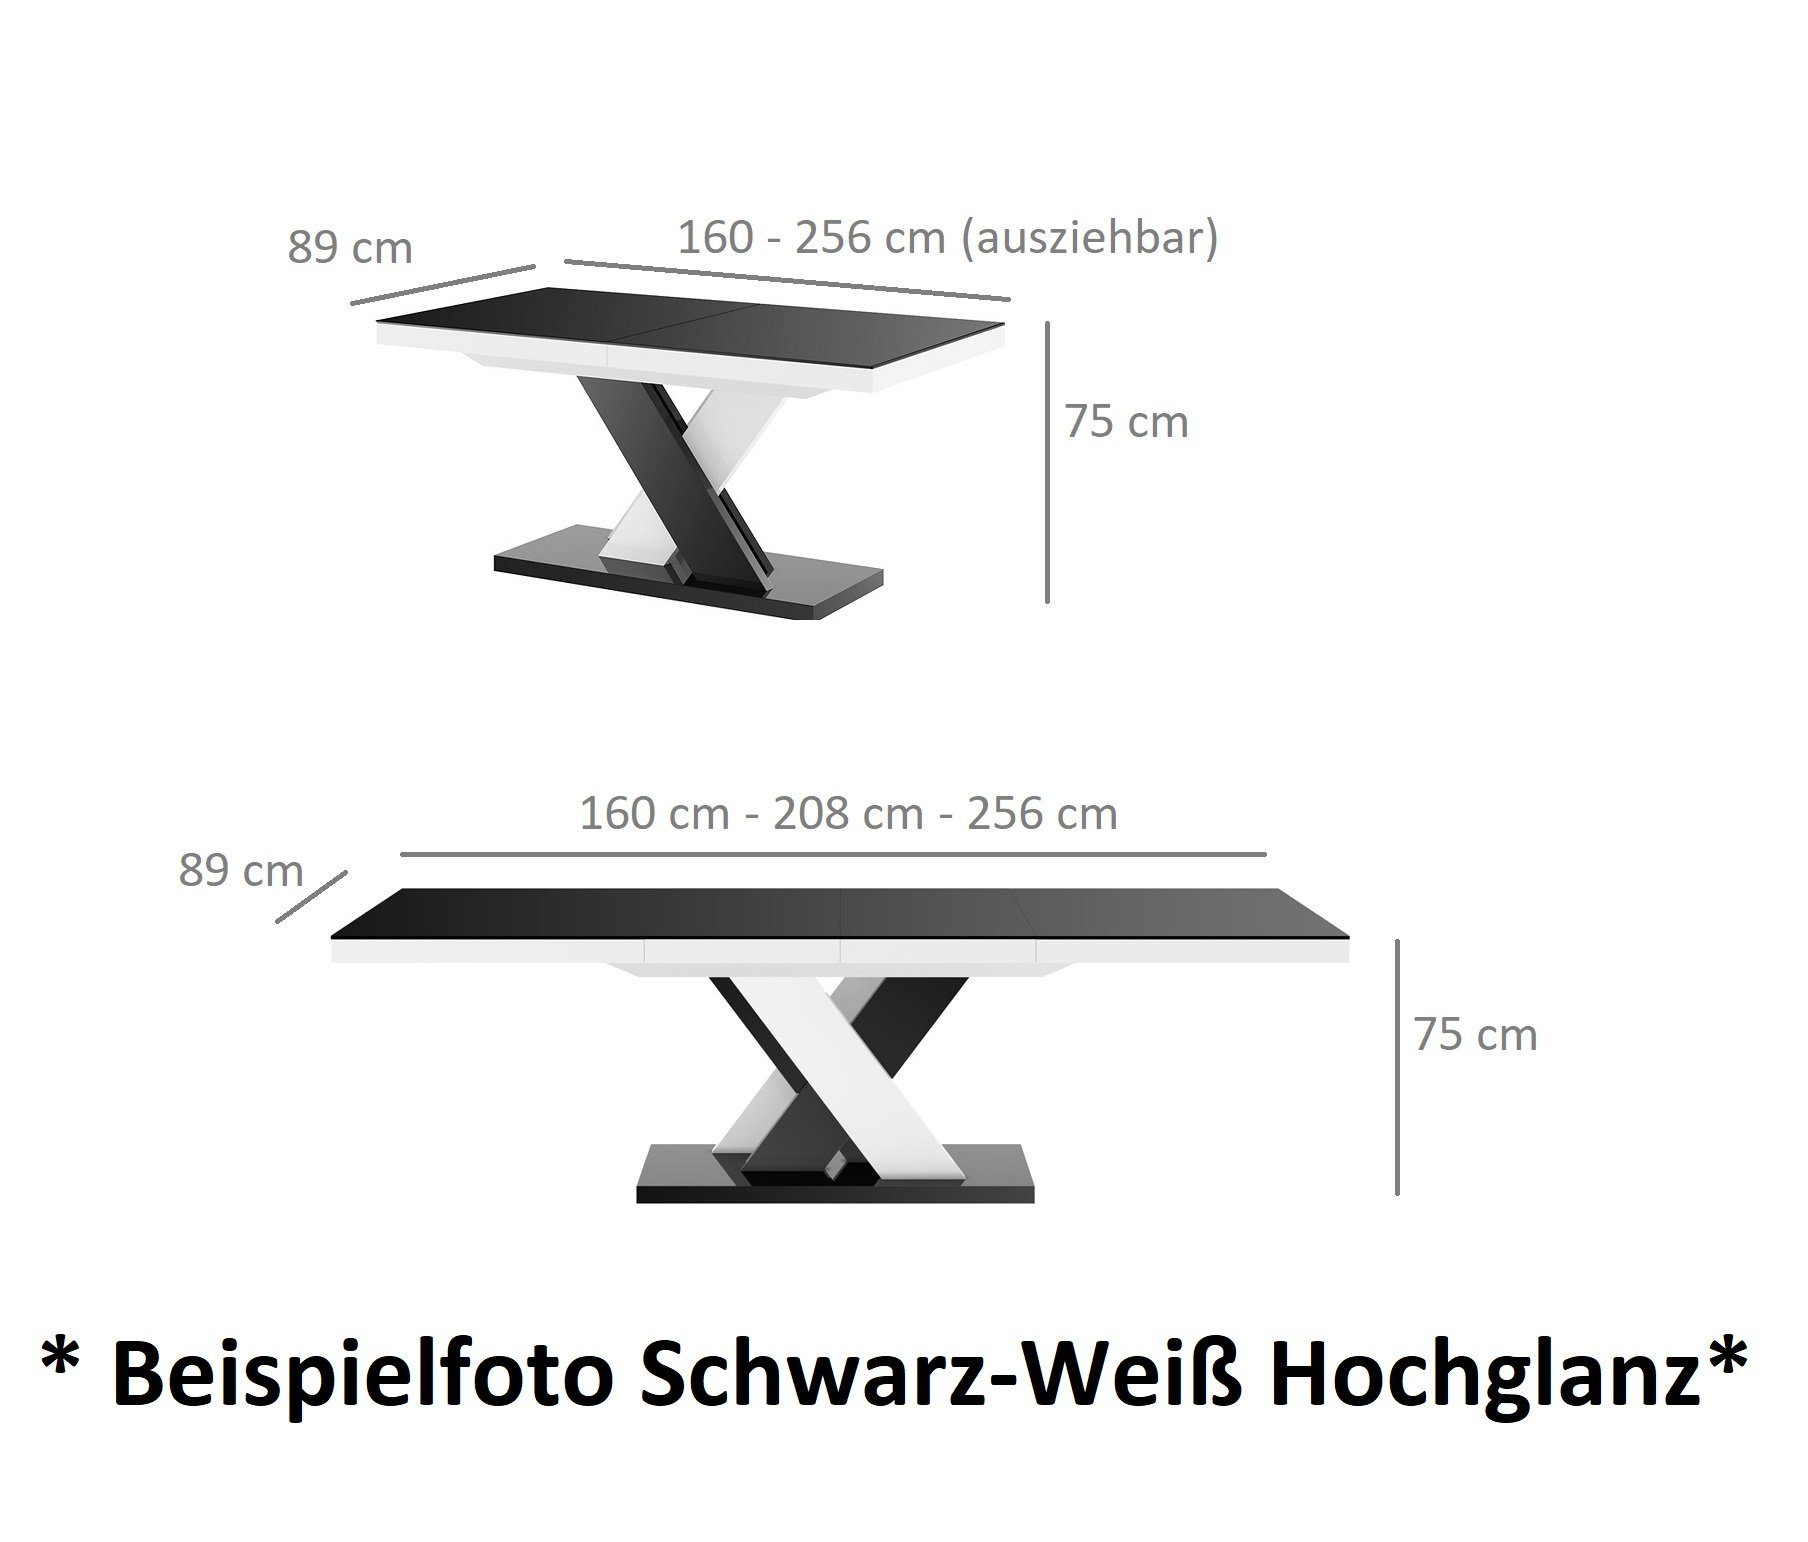 ausziehbar - Beton Hochglanz Tisch HEN-111 Design Esstisch designimpex Hochglanz / Beton Grau cm Weiß Weiß 160-256